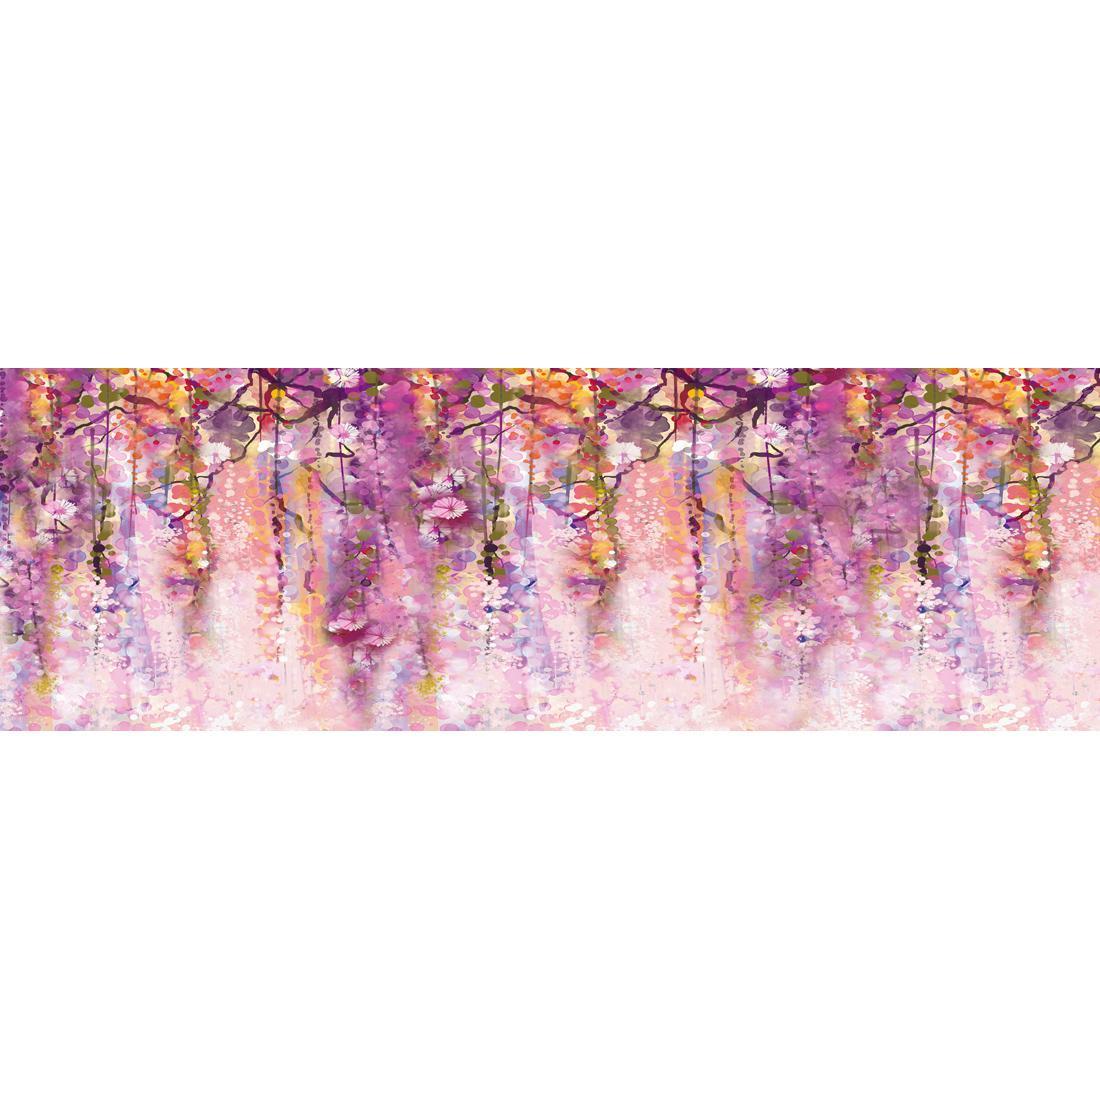 Lilac Dream (long) - wallart-australia - Canvas